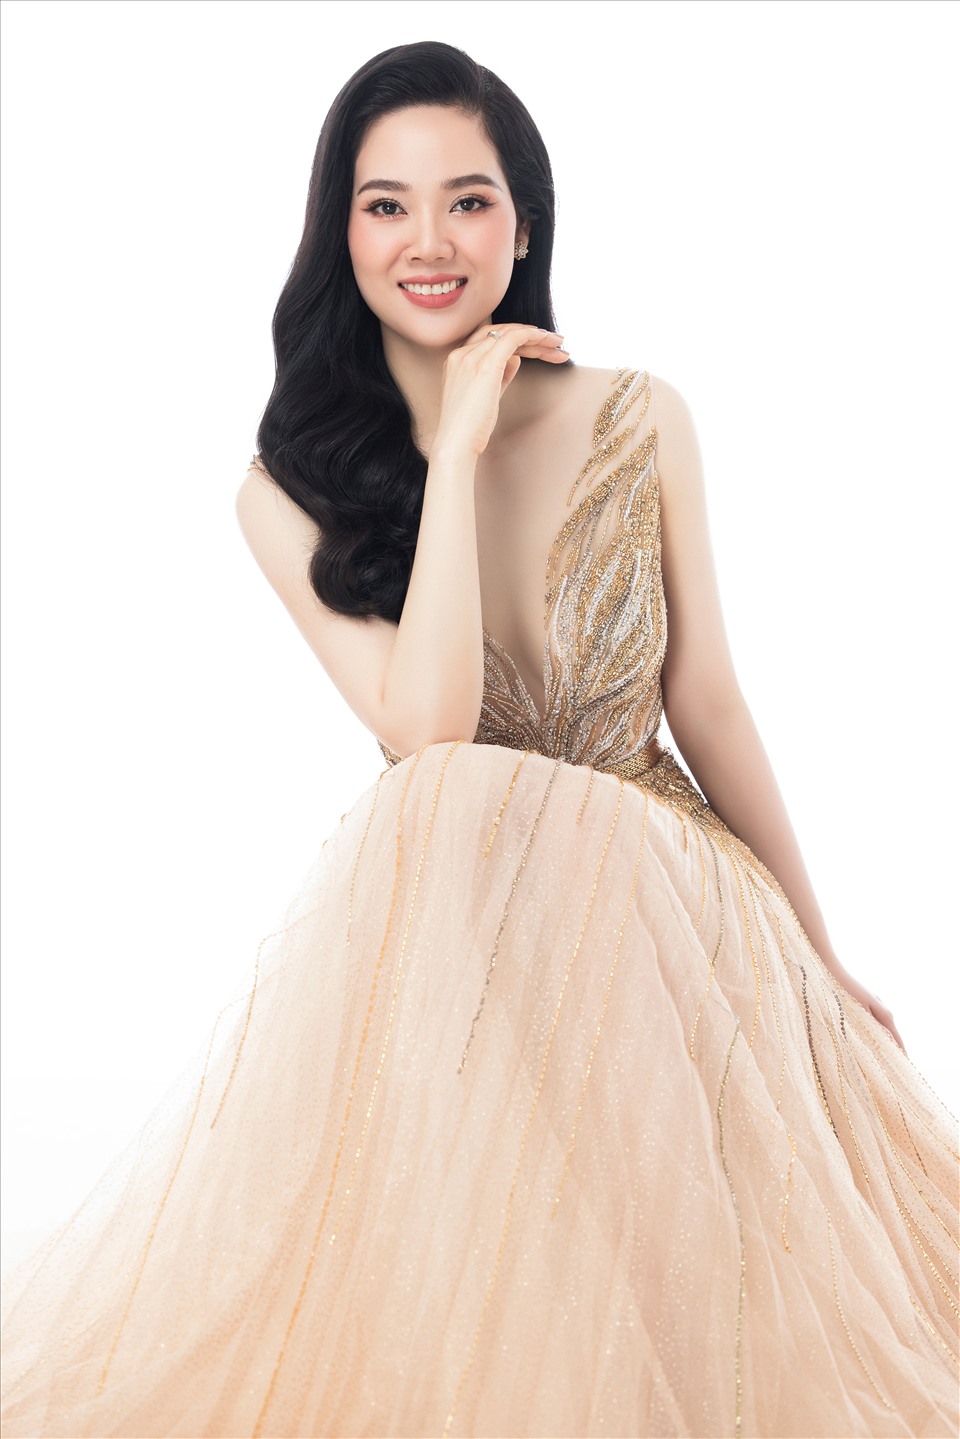 Trong bộ ảnh mới hoa hậu Mai Phương khoe vóc dáng trong các trang phục dạ hội nhấn eo, xẻ tà sâu hay khéo léo khoe vai trần quyến rũ. ẢNh: NVCC.